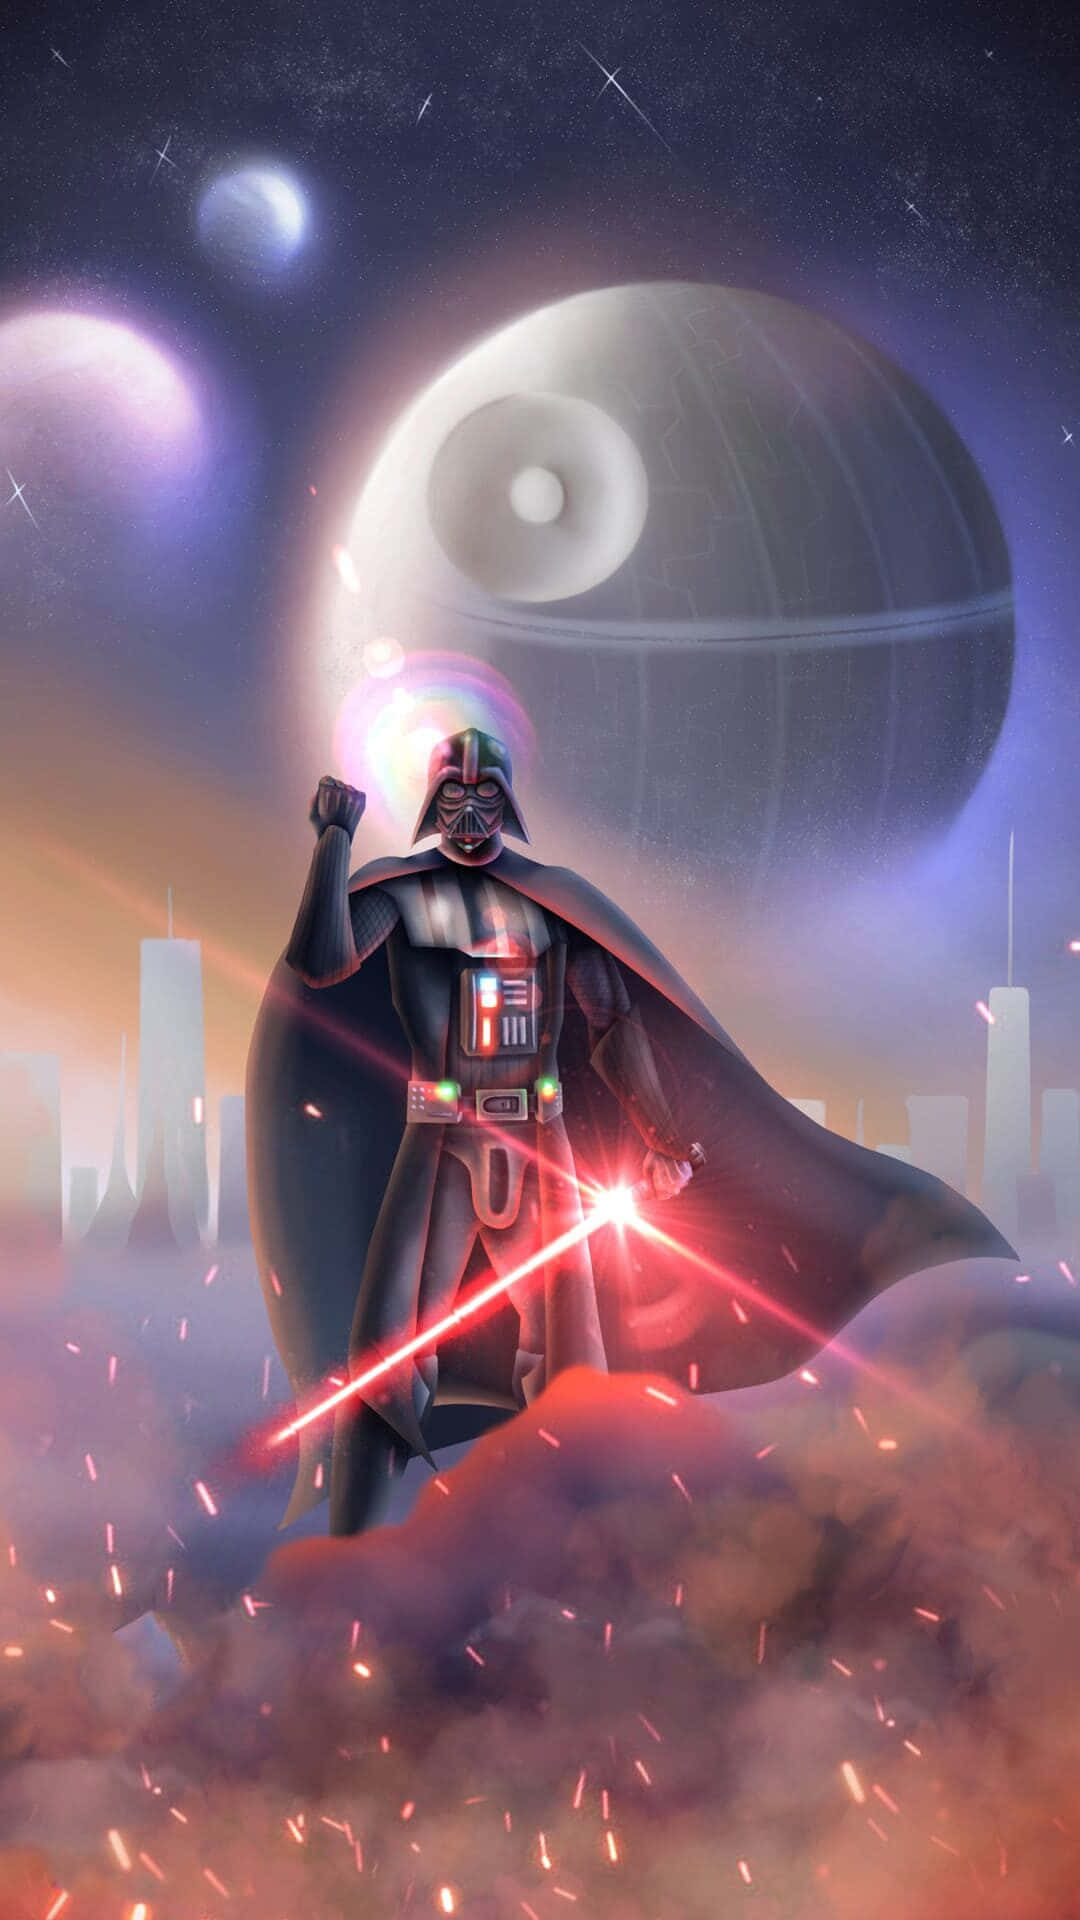 Darth Vader, the iconic villain of the Star Wars saga